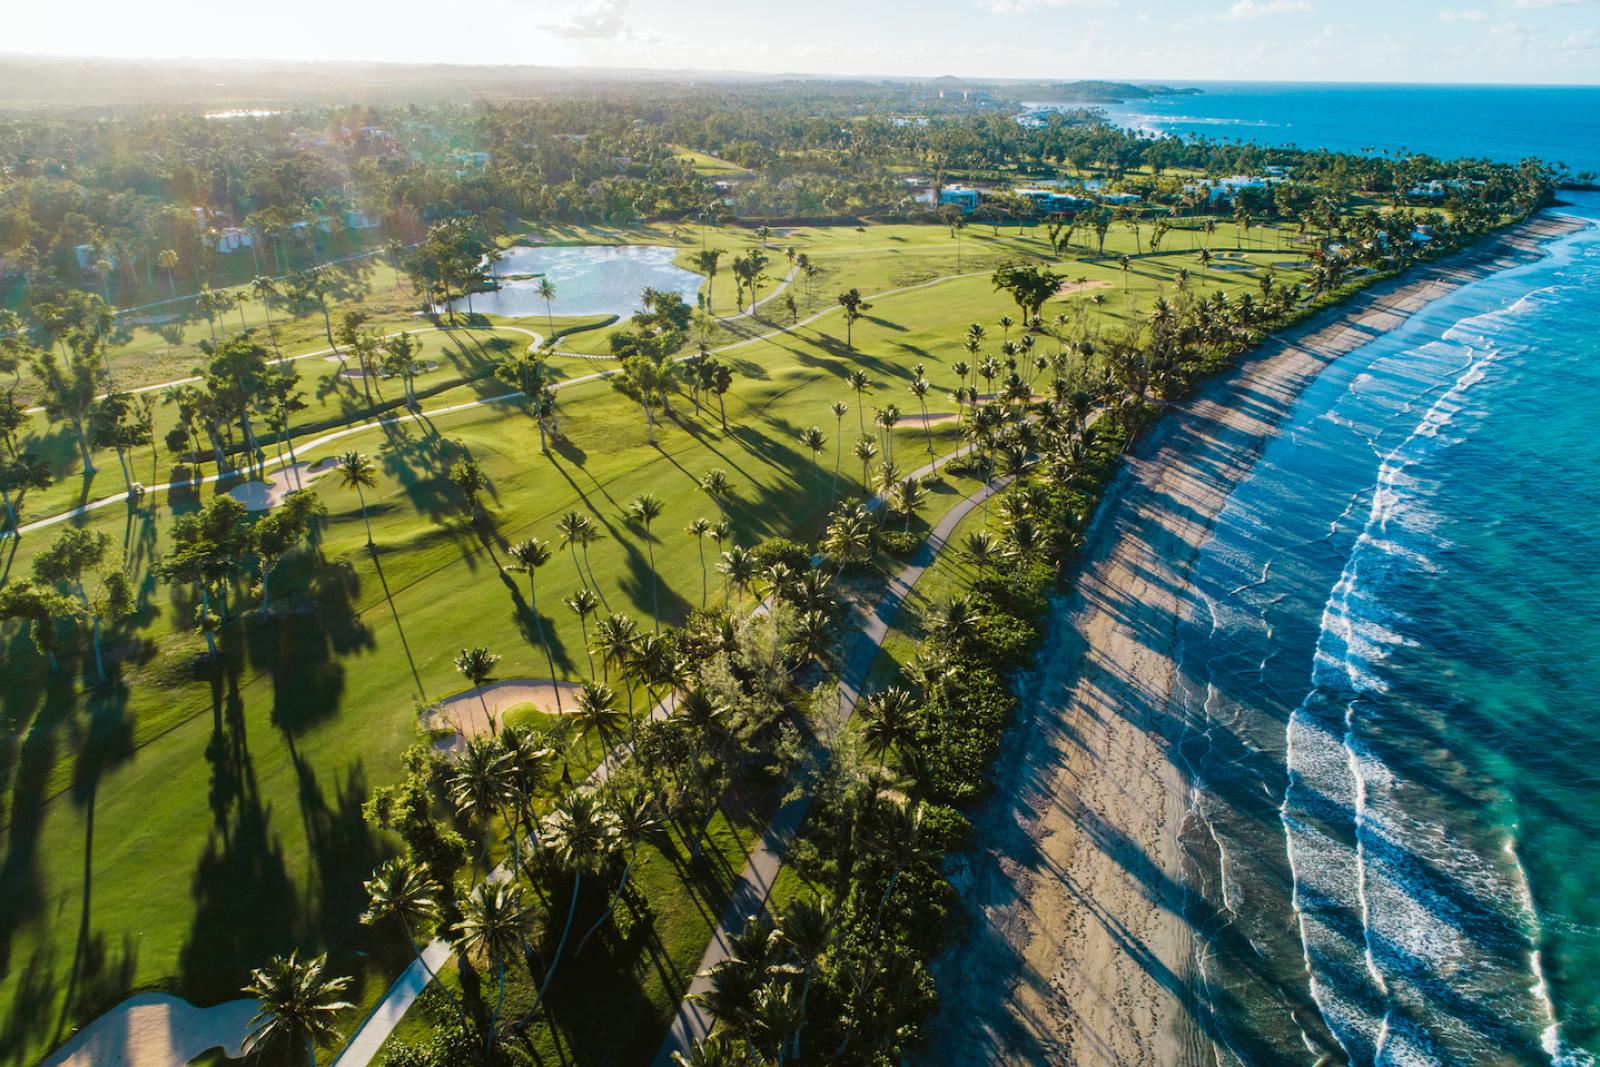 Gorgeous aerial view of the Dorado Beach Resort & Club. 